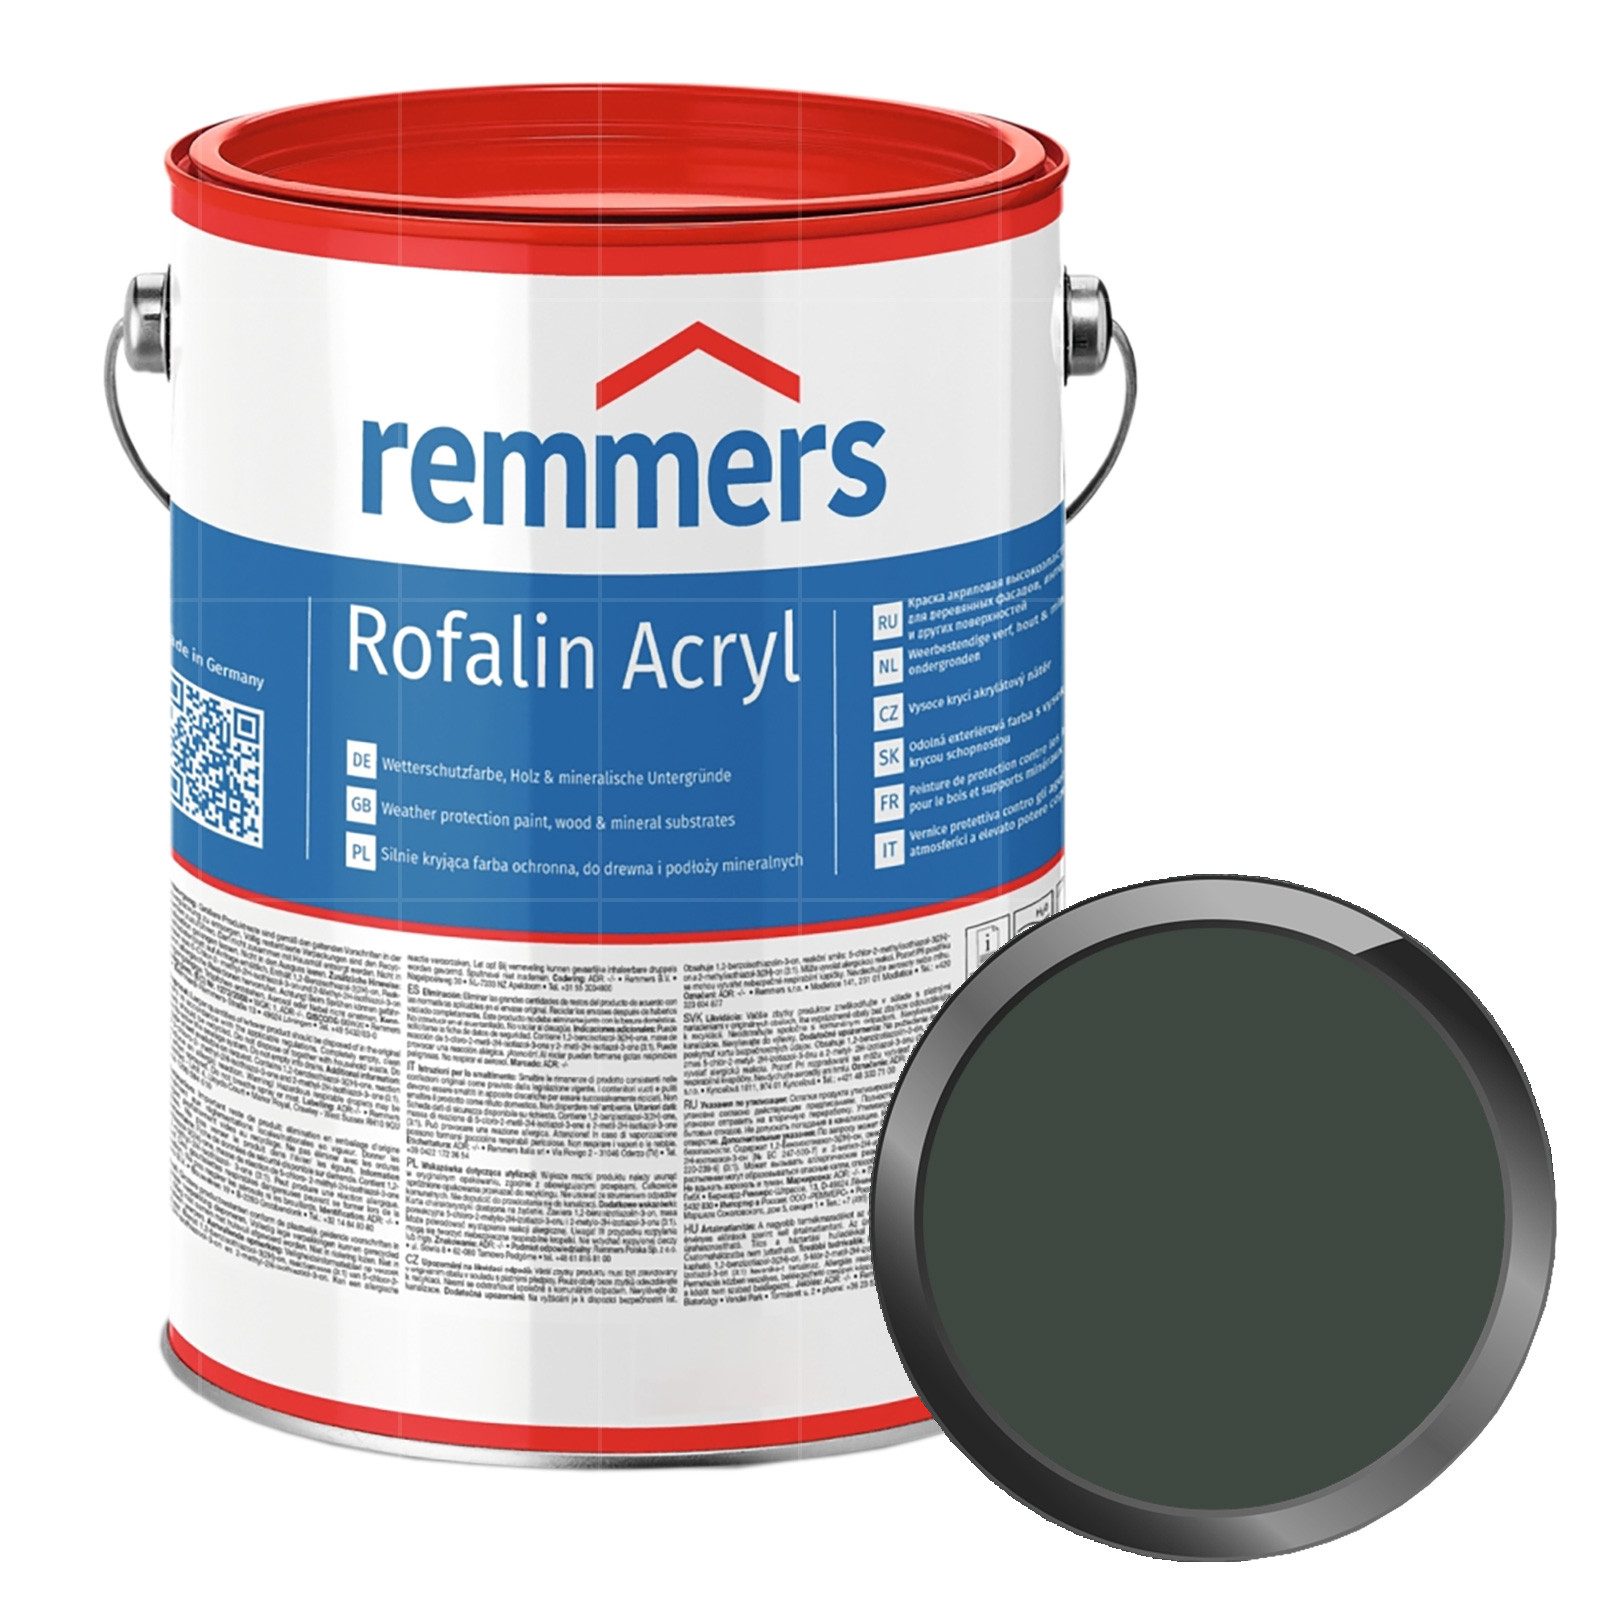 Remmers Wetterschutzfarbe ROFALIN ACRYL - 2.5 LTR